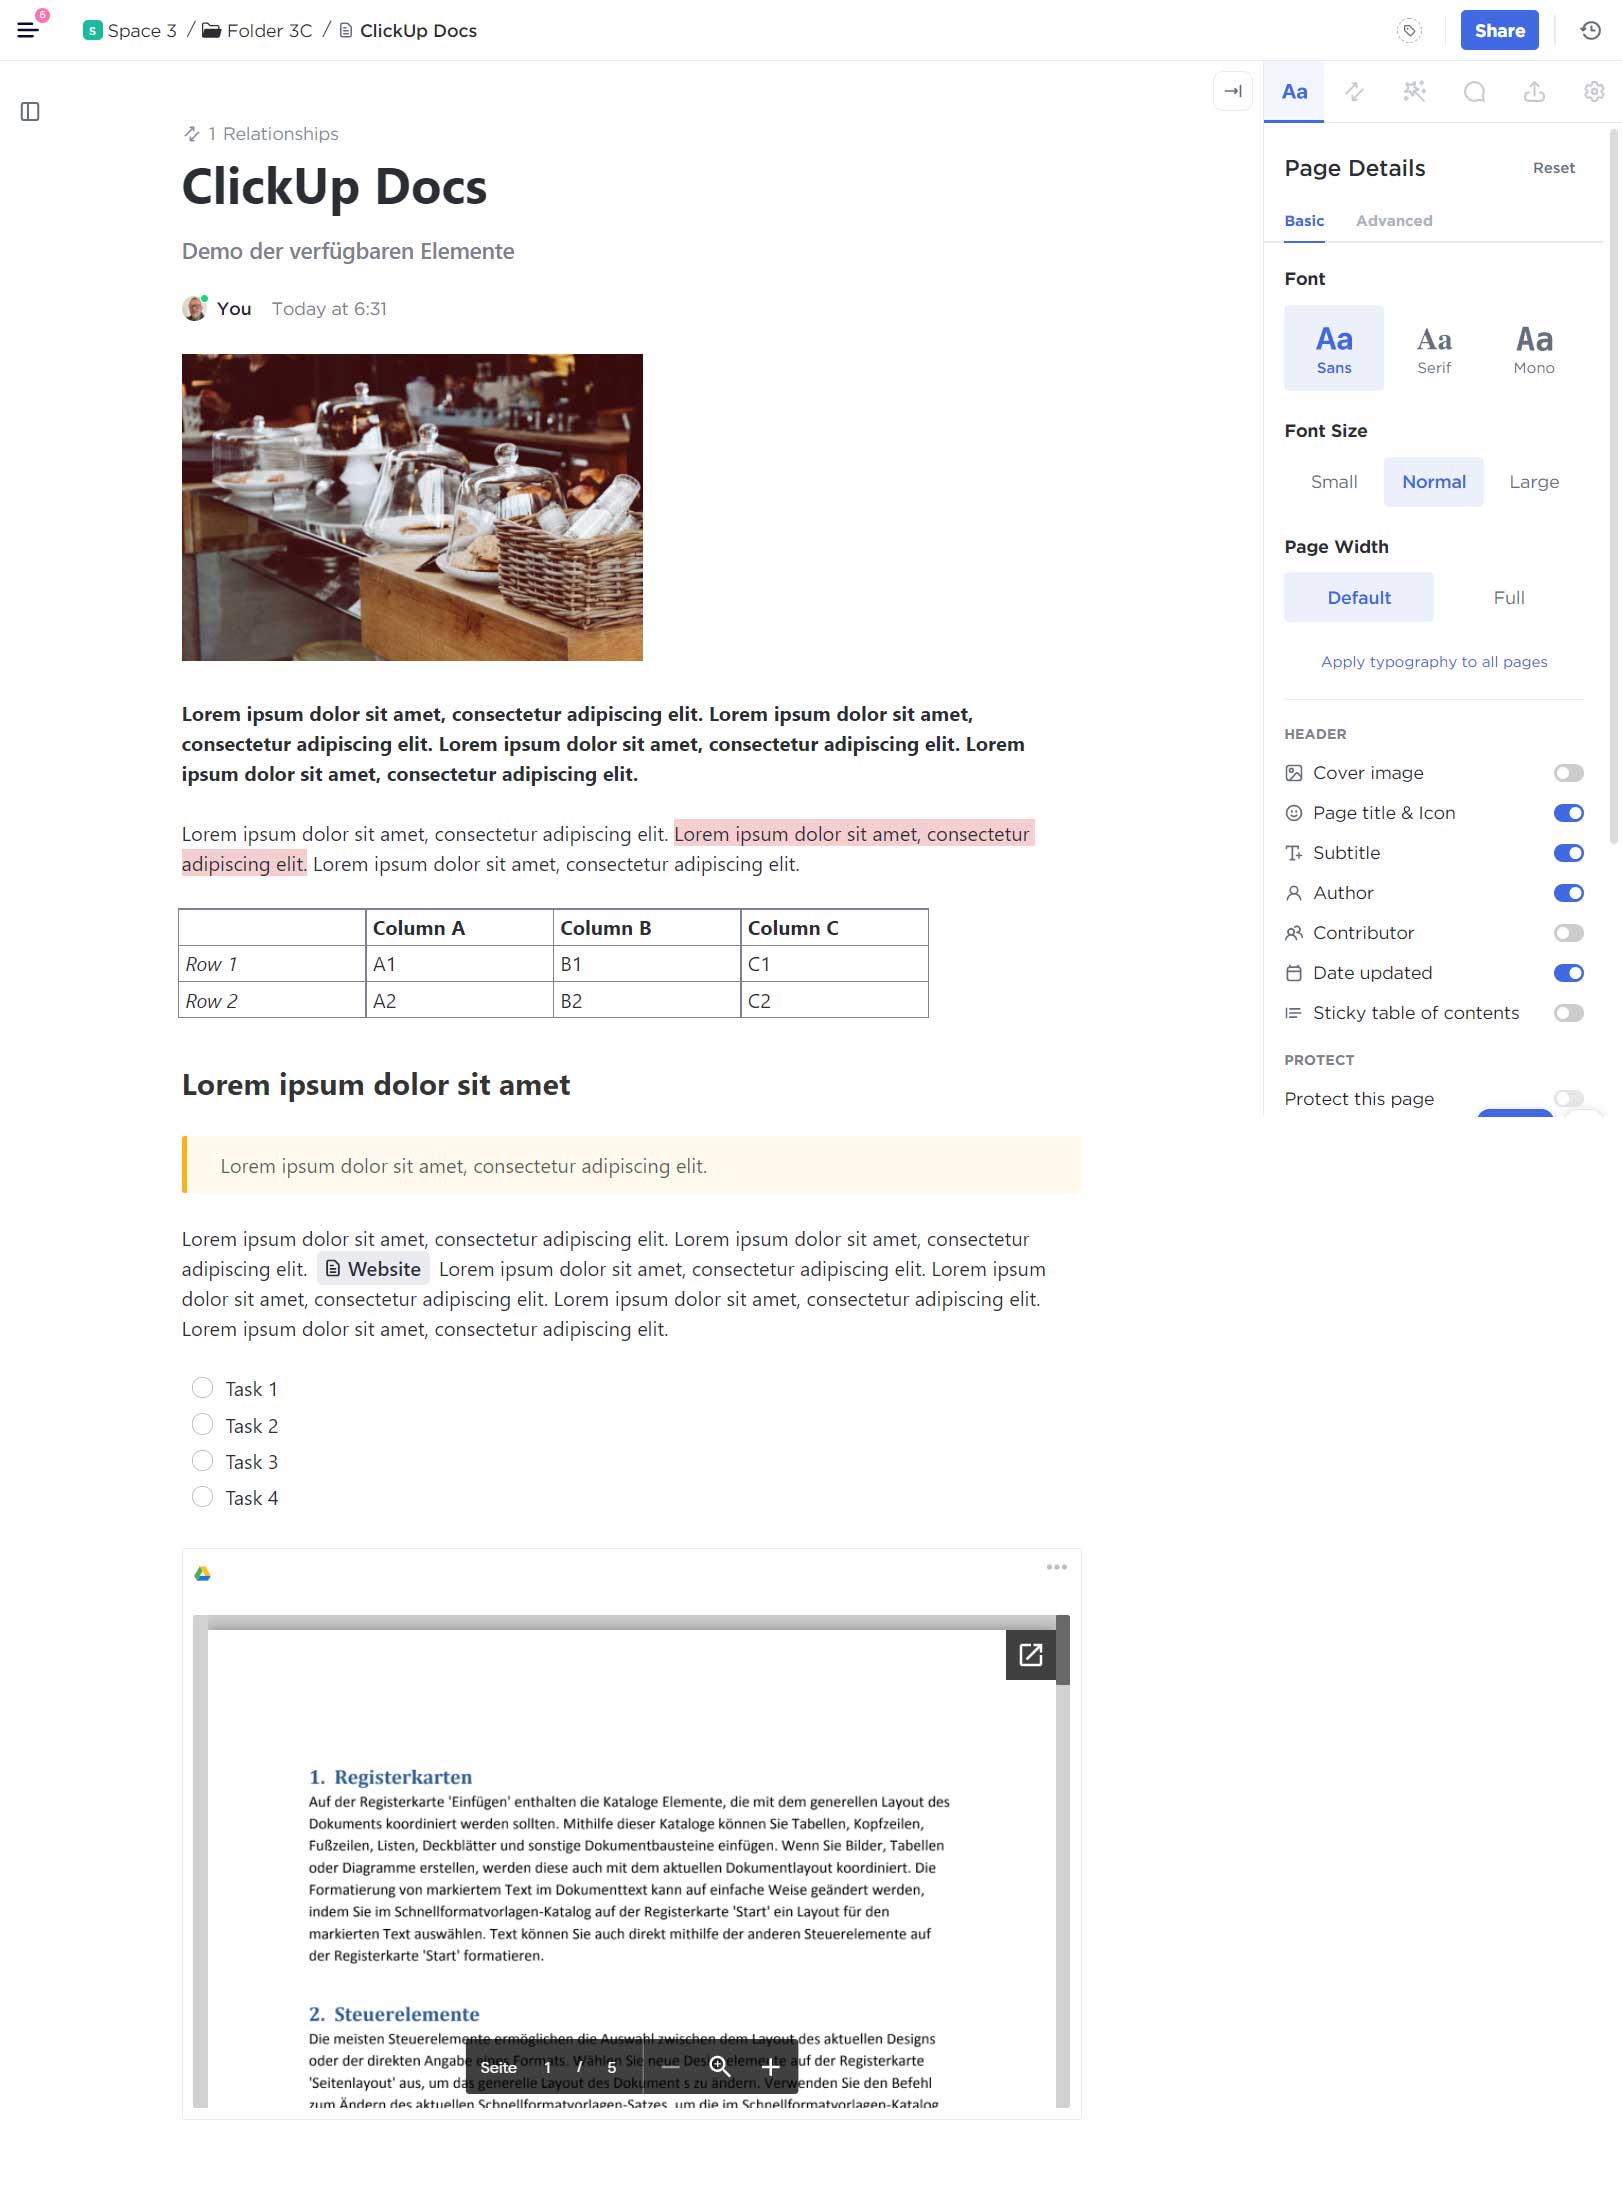 Beispielhaftes ClickUp Doc, das Inhaltselemente wie Bilder, Tabellen, Aufgabenlisten und eingebettete Dokumente zeigt